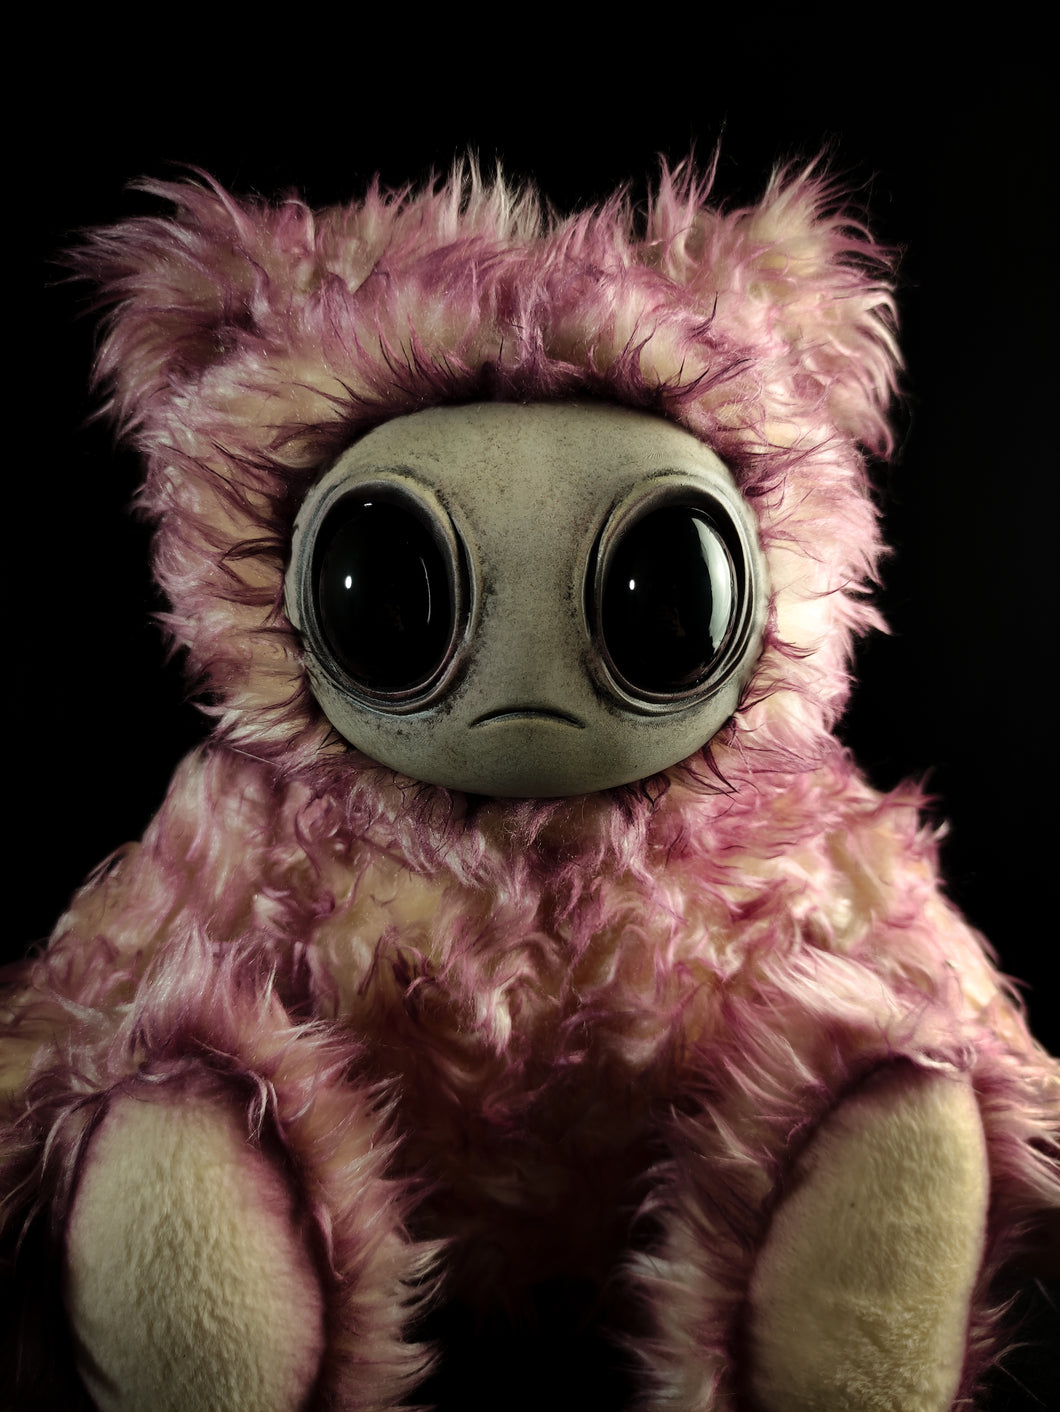 Meeporo (Limeberry Ver.) - Monster Art Doll Plush Toy